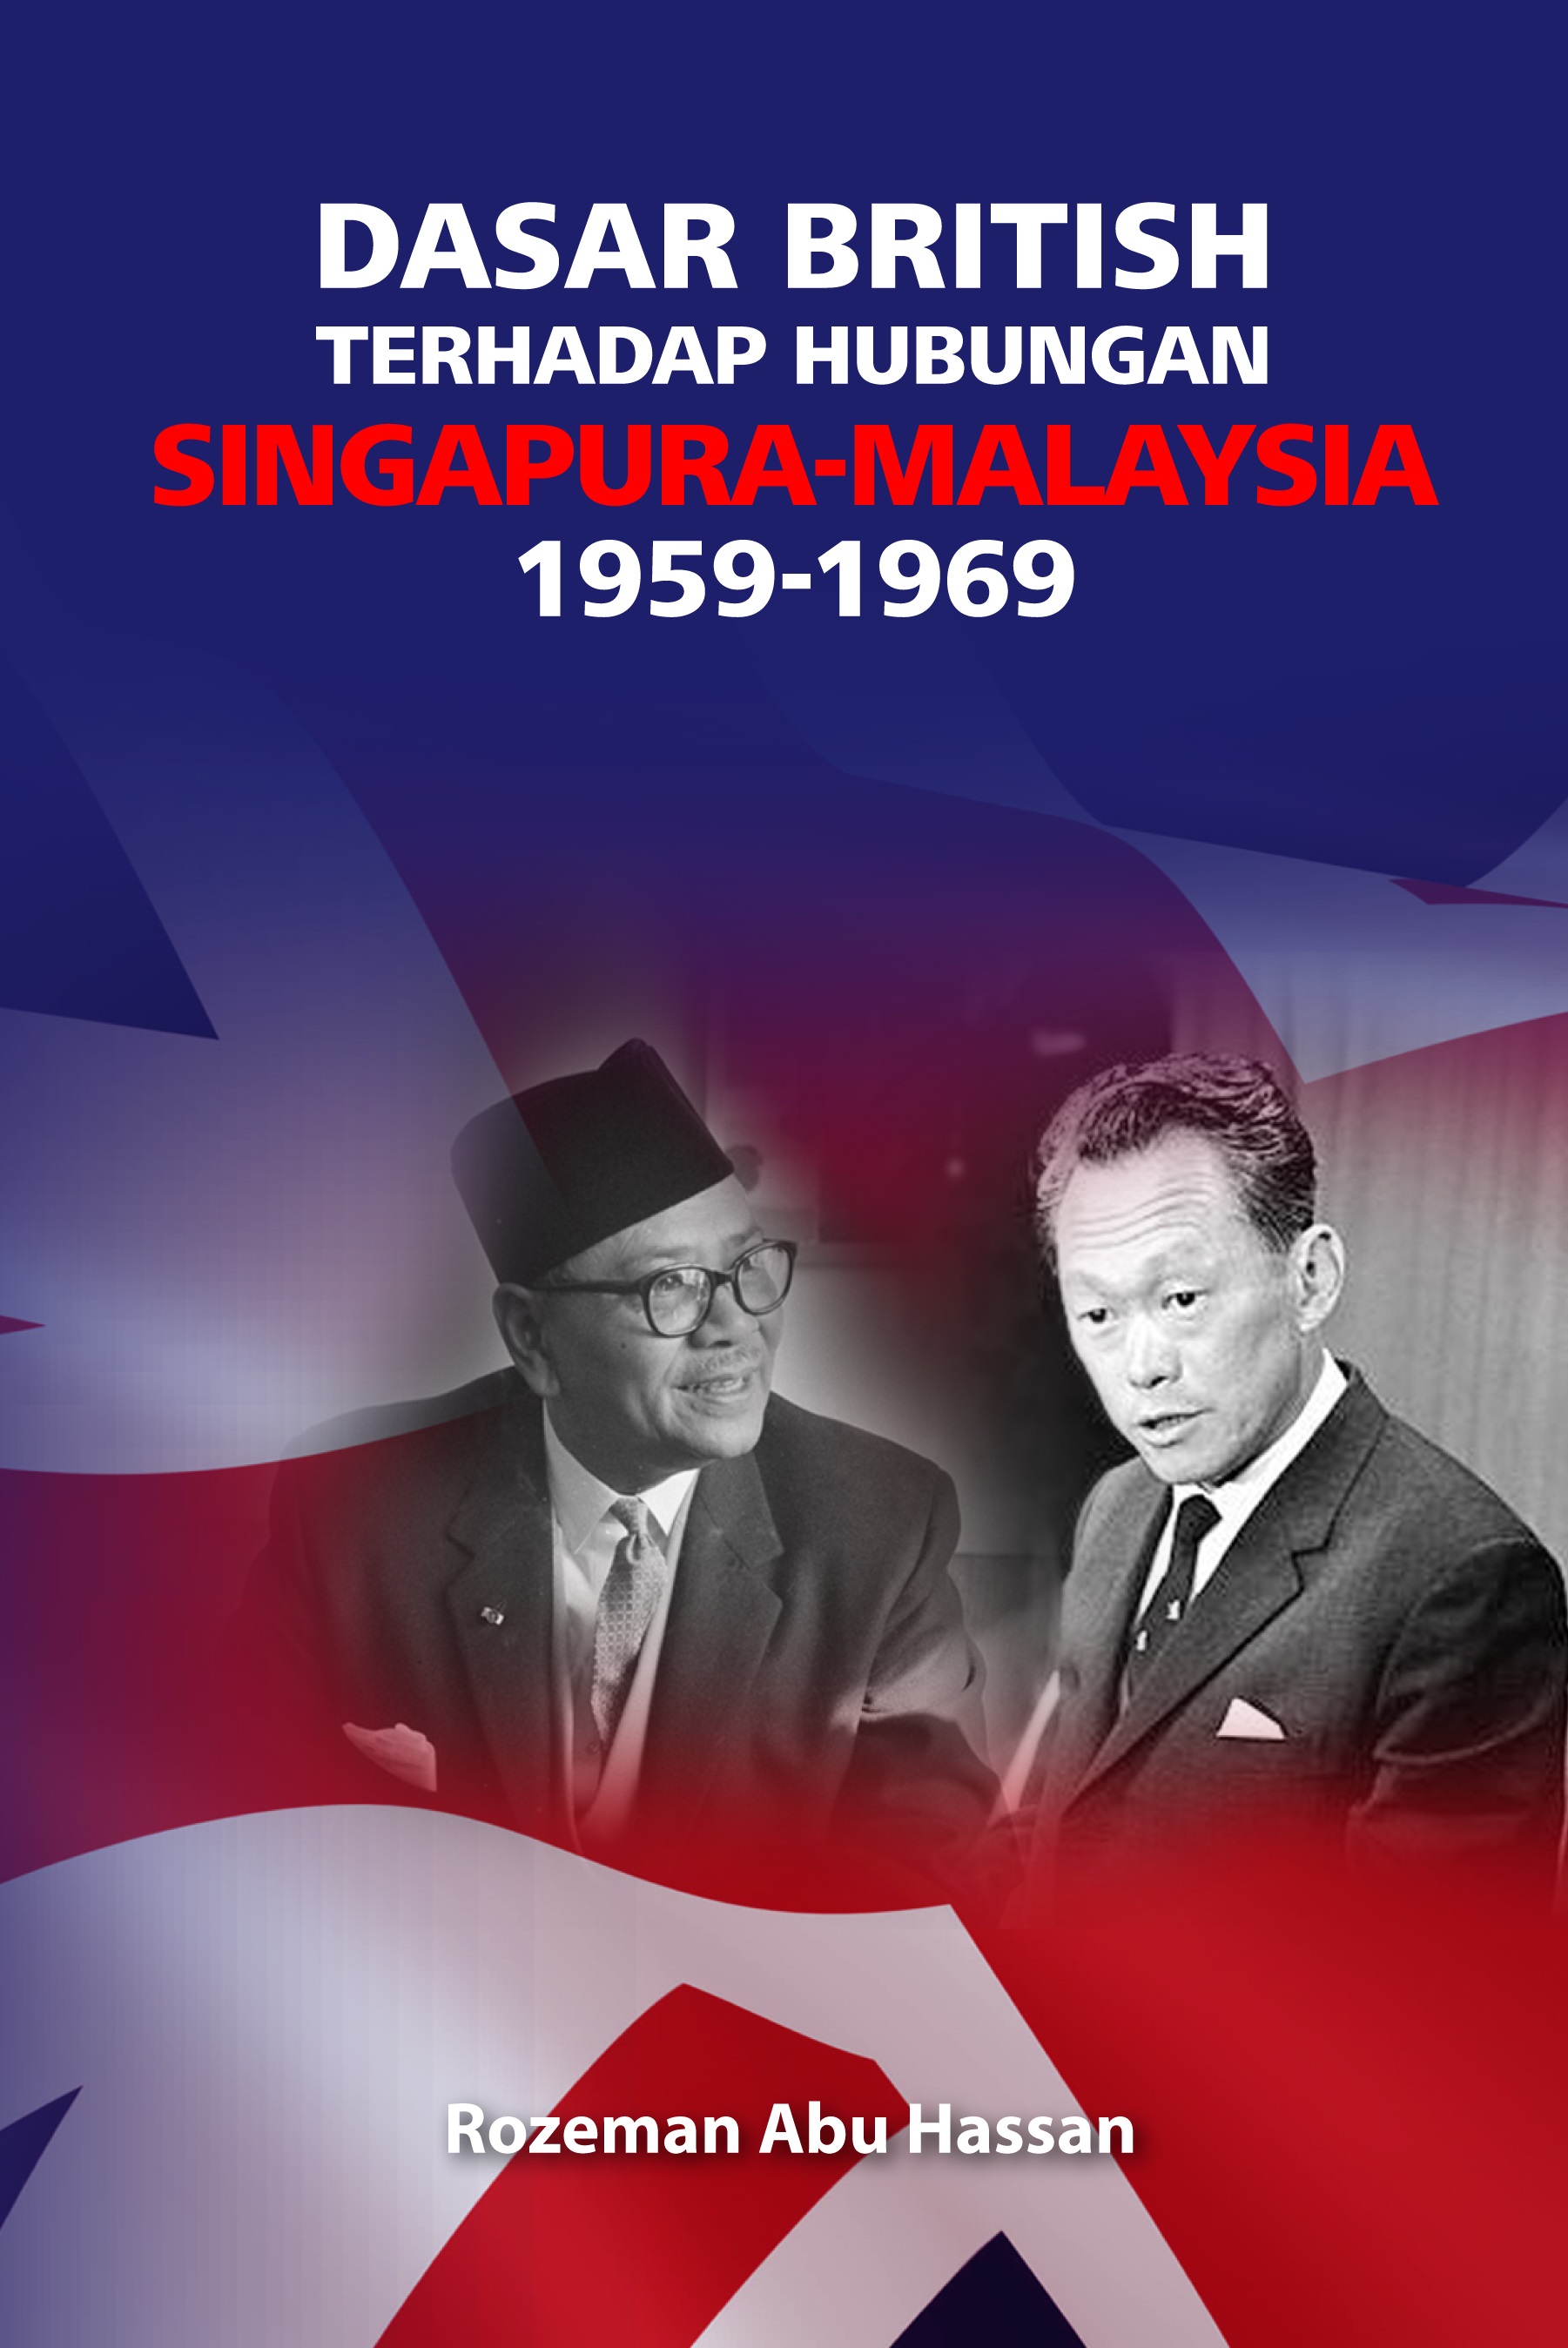 Dasar British Terhadap Hubungan Singapura - Malaysia 1959-1969 - Malaysia's Online Bookstore"